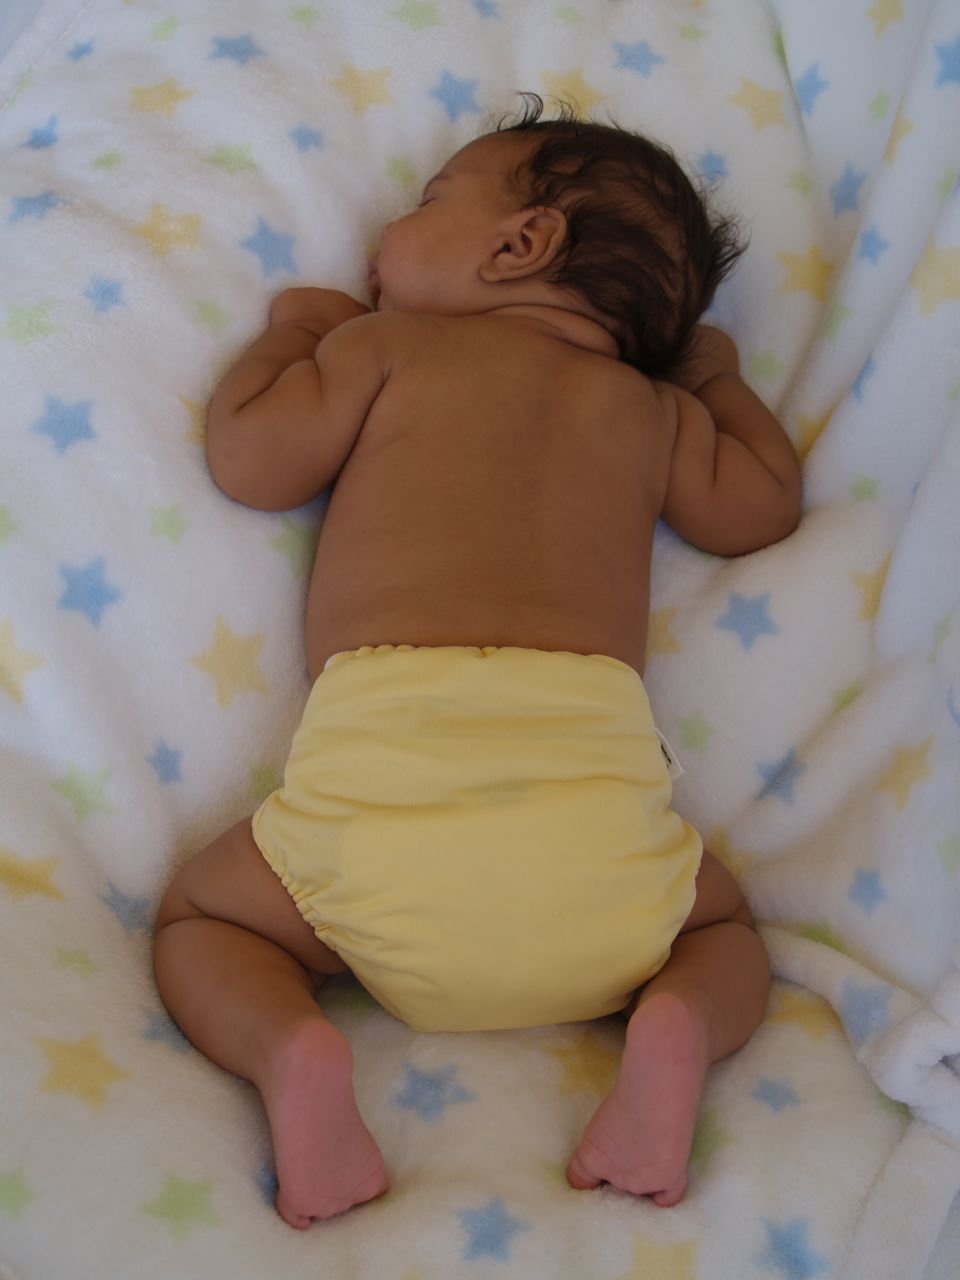 Bébé portant une couche | Image: Wikimedia Commons